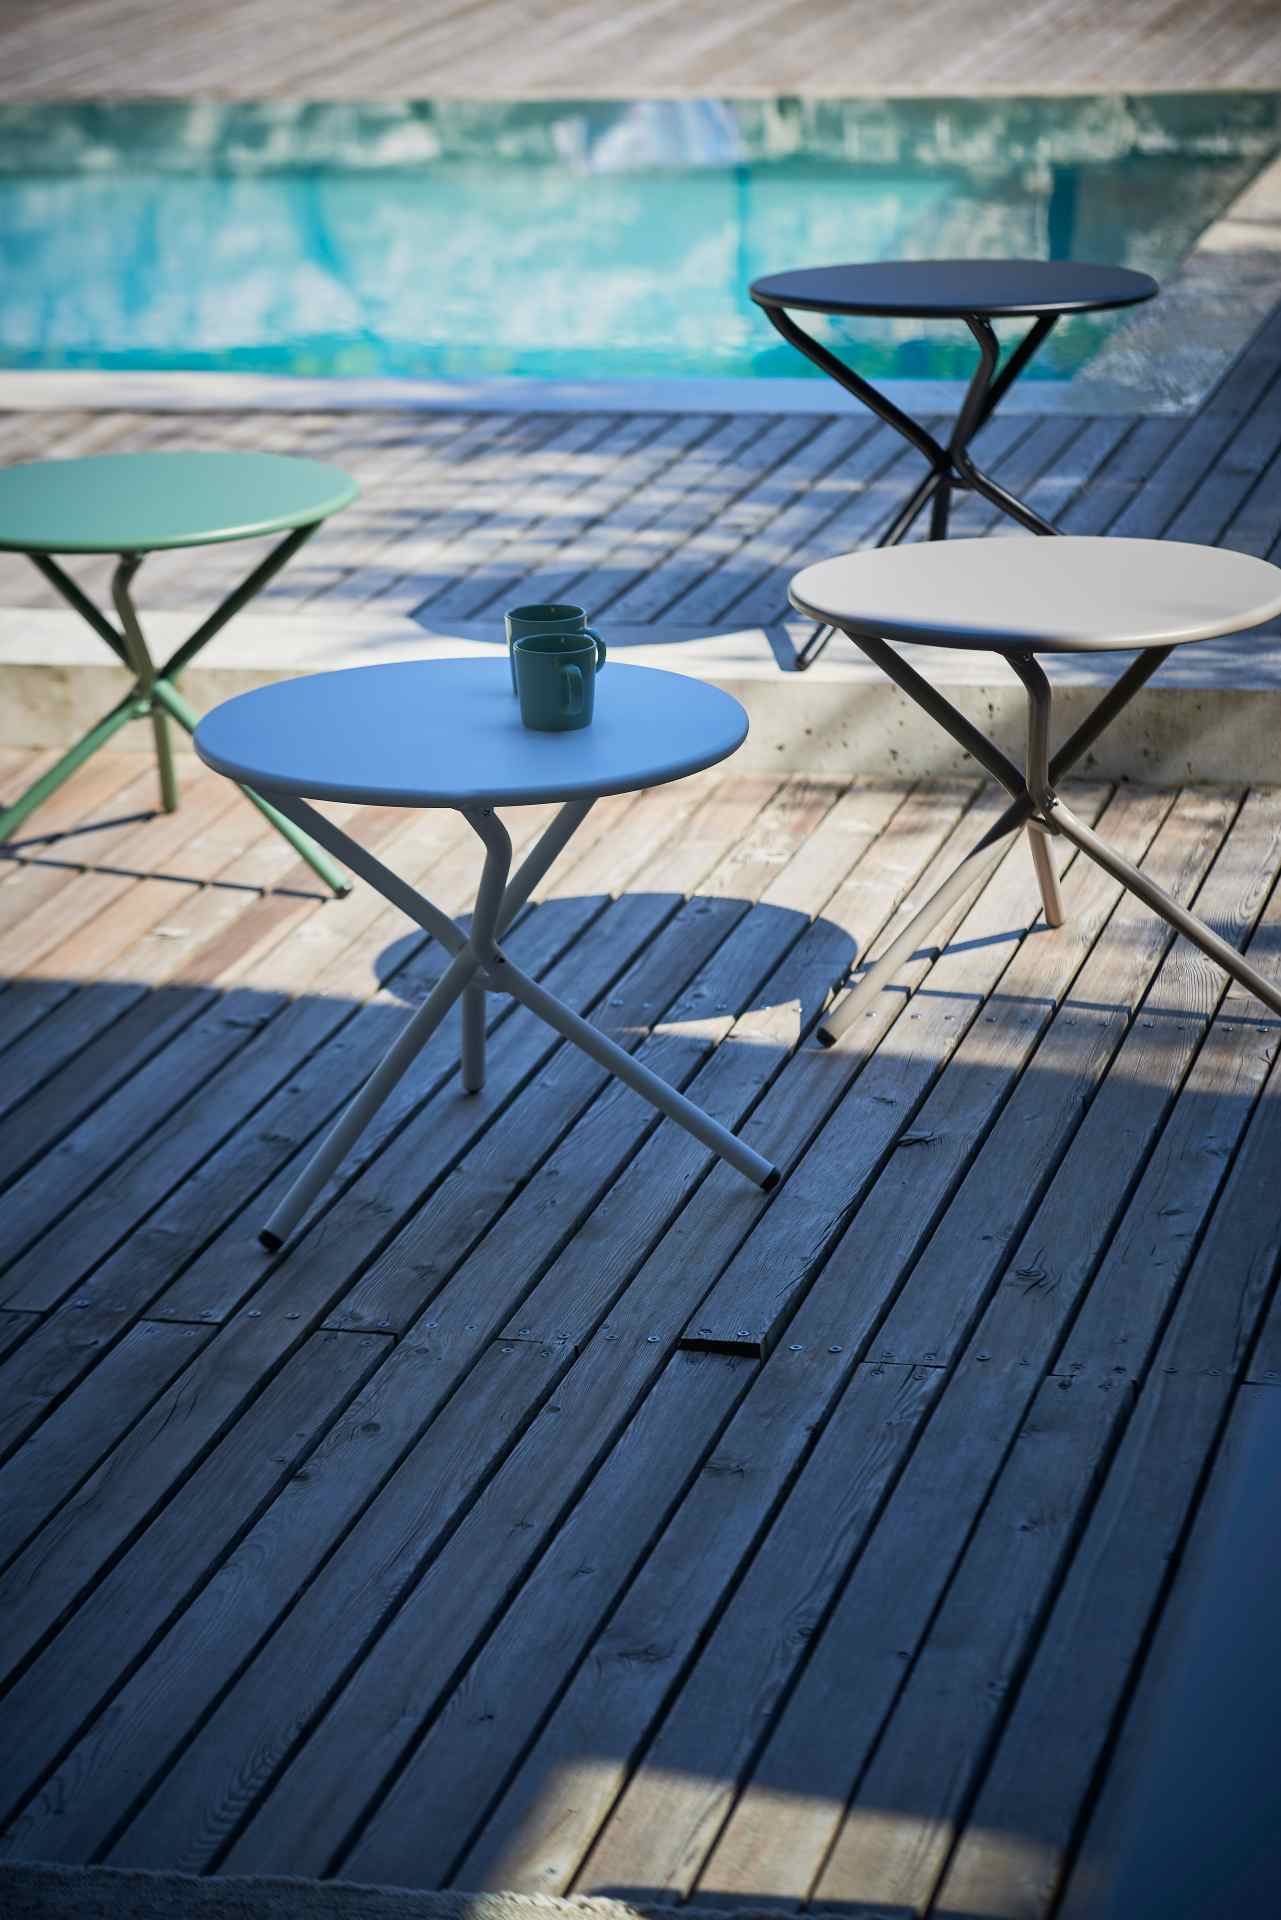 Der Beistelltisch Tris wurde aus Aluminium gefertigt und ist daher auch für den Outdoor Bereich einsetzbar. Designet wurde der Tisch von der Marke Jan Kurtz. Dieser Tisch hat die Farbe Taupe.